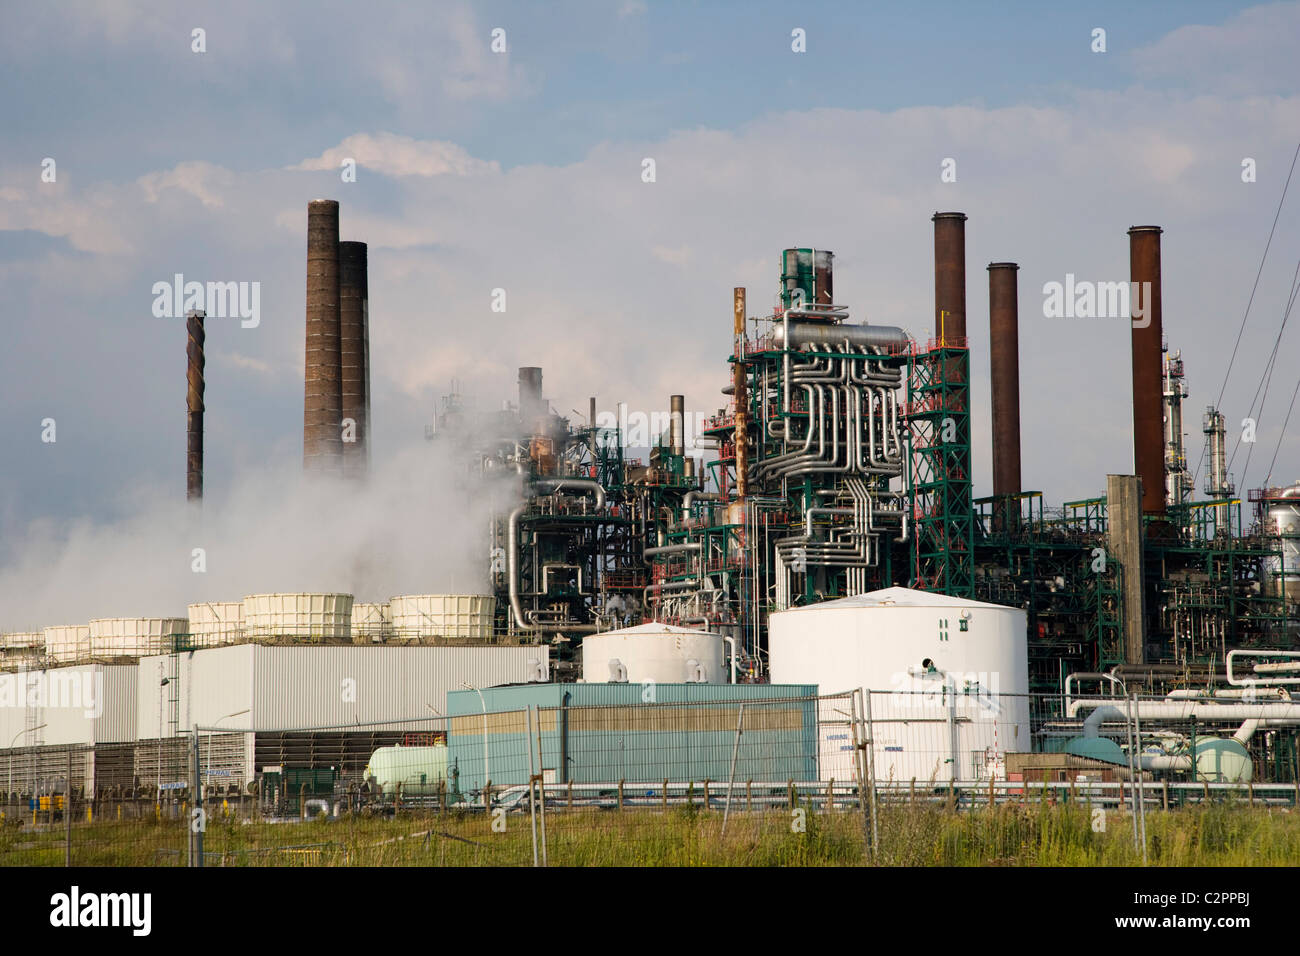 L'usine pétrochimique. Anvers port industriel. La Belgique Photo Stock -  Alamy